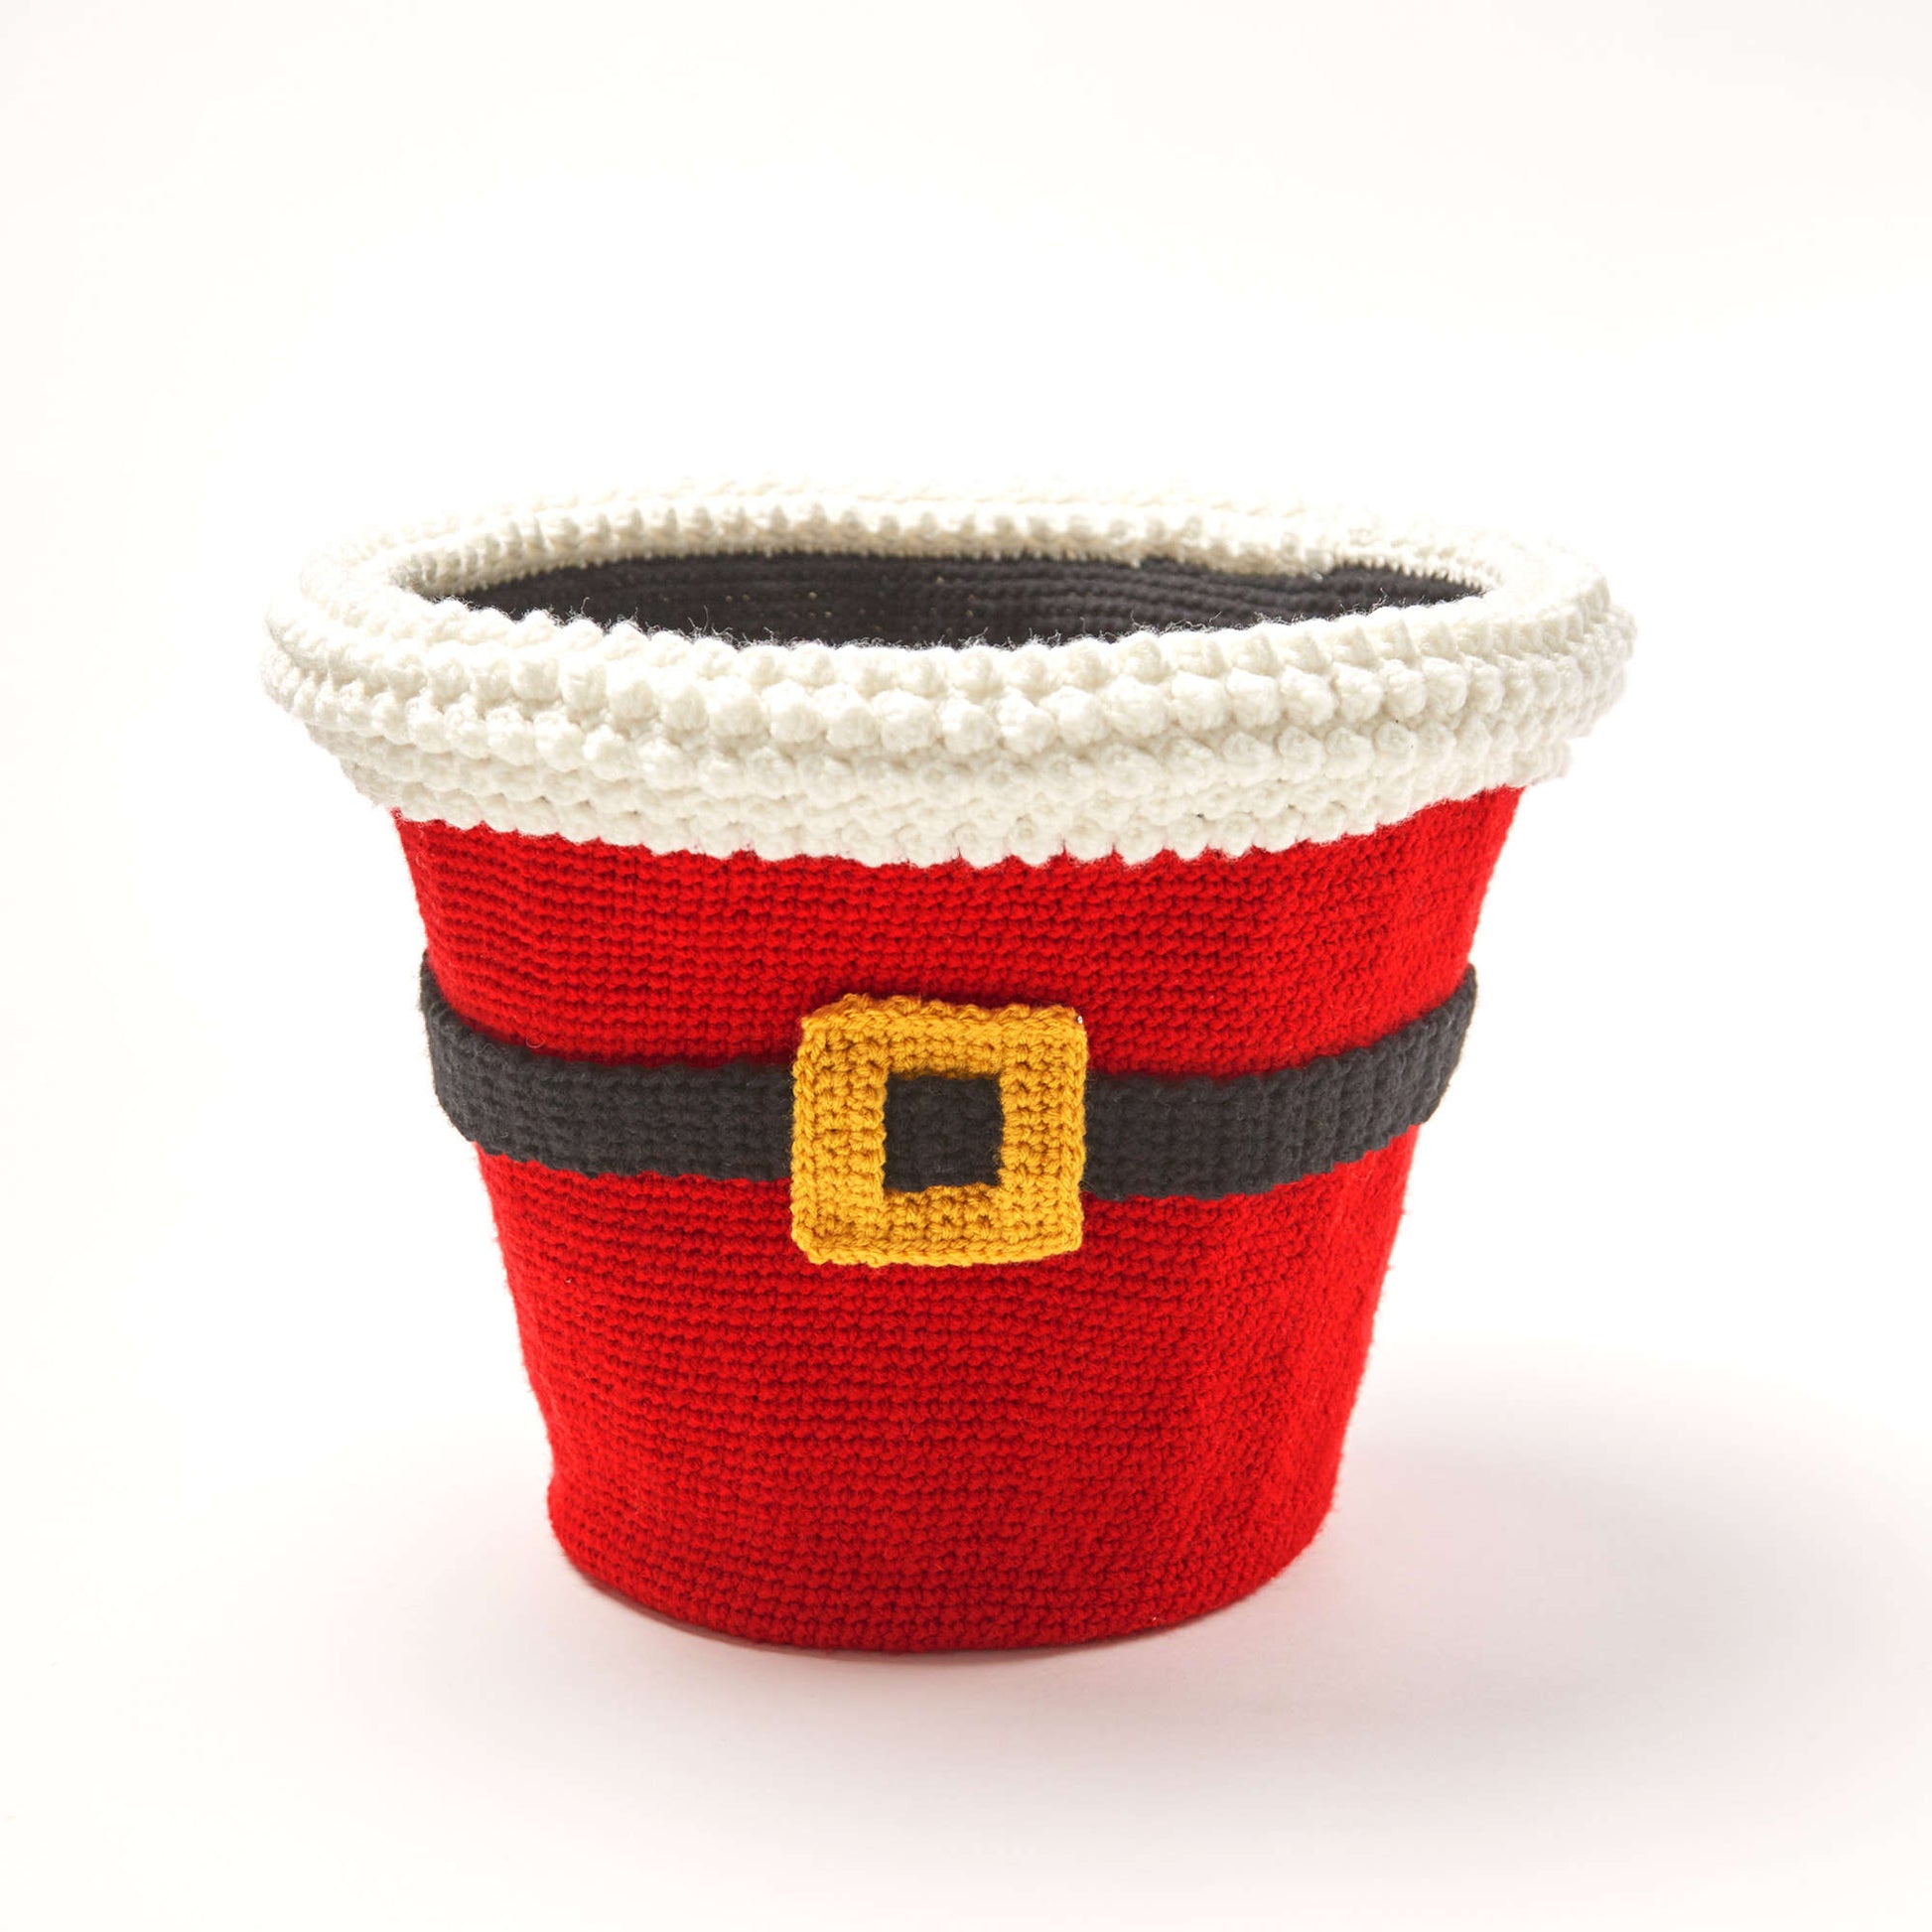 Free Red Heart Crochet Santa's Gift Basket Pattern